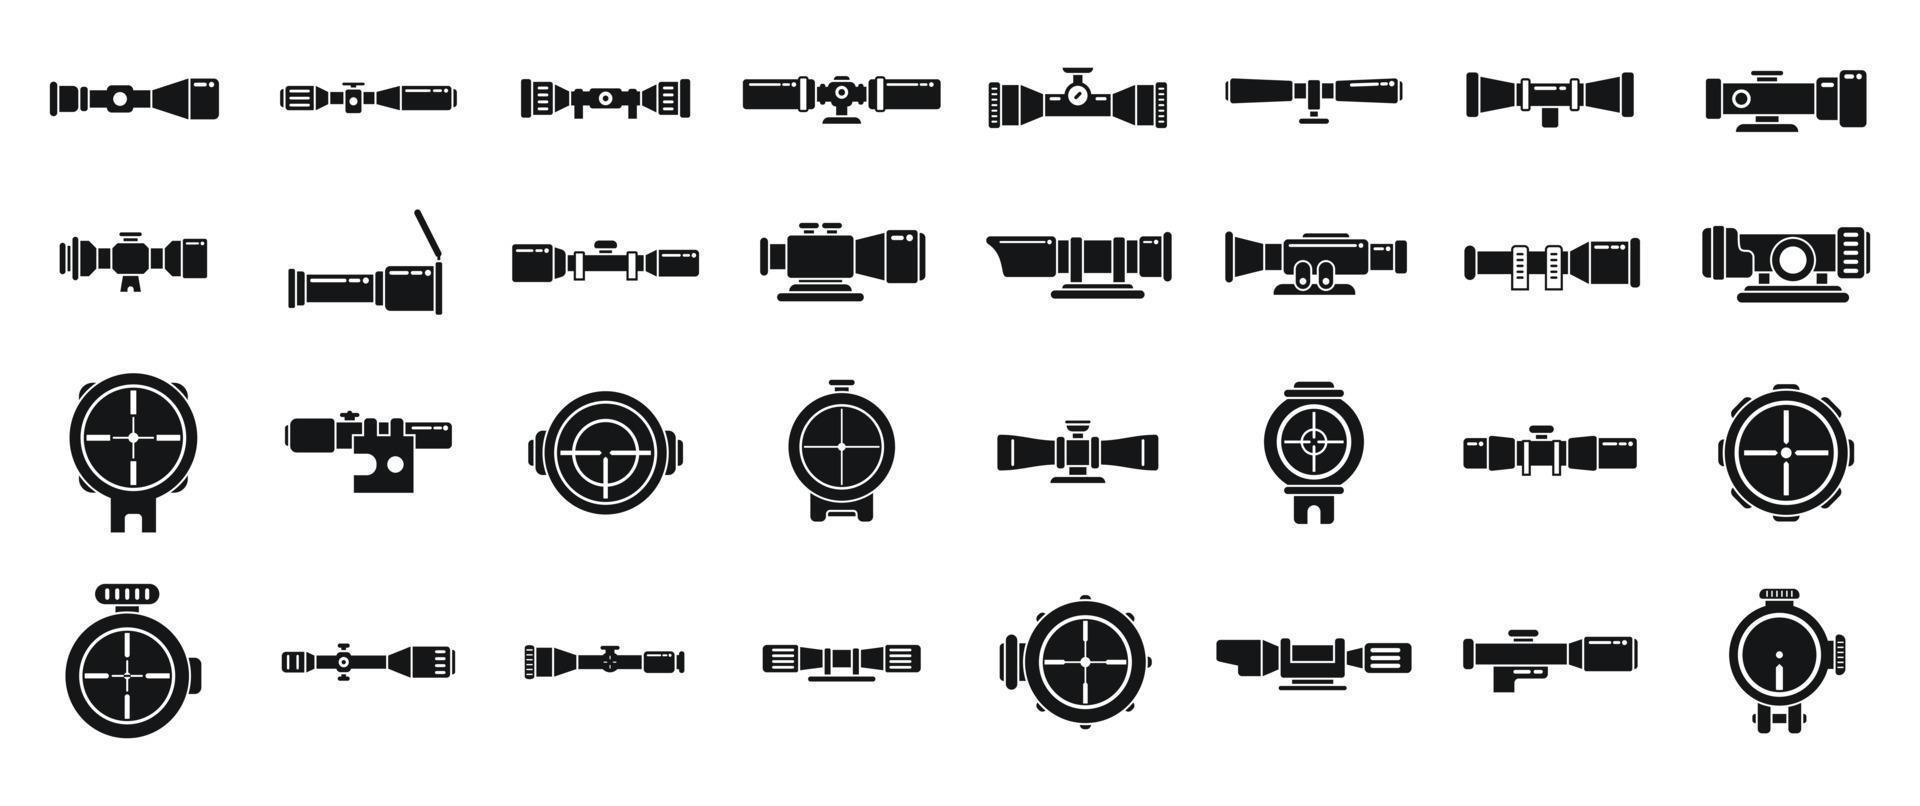 los iconos de la mira telescópica establecen un vector simple. alcance de francotirador